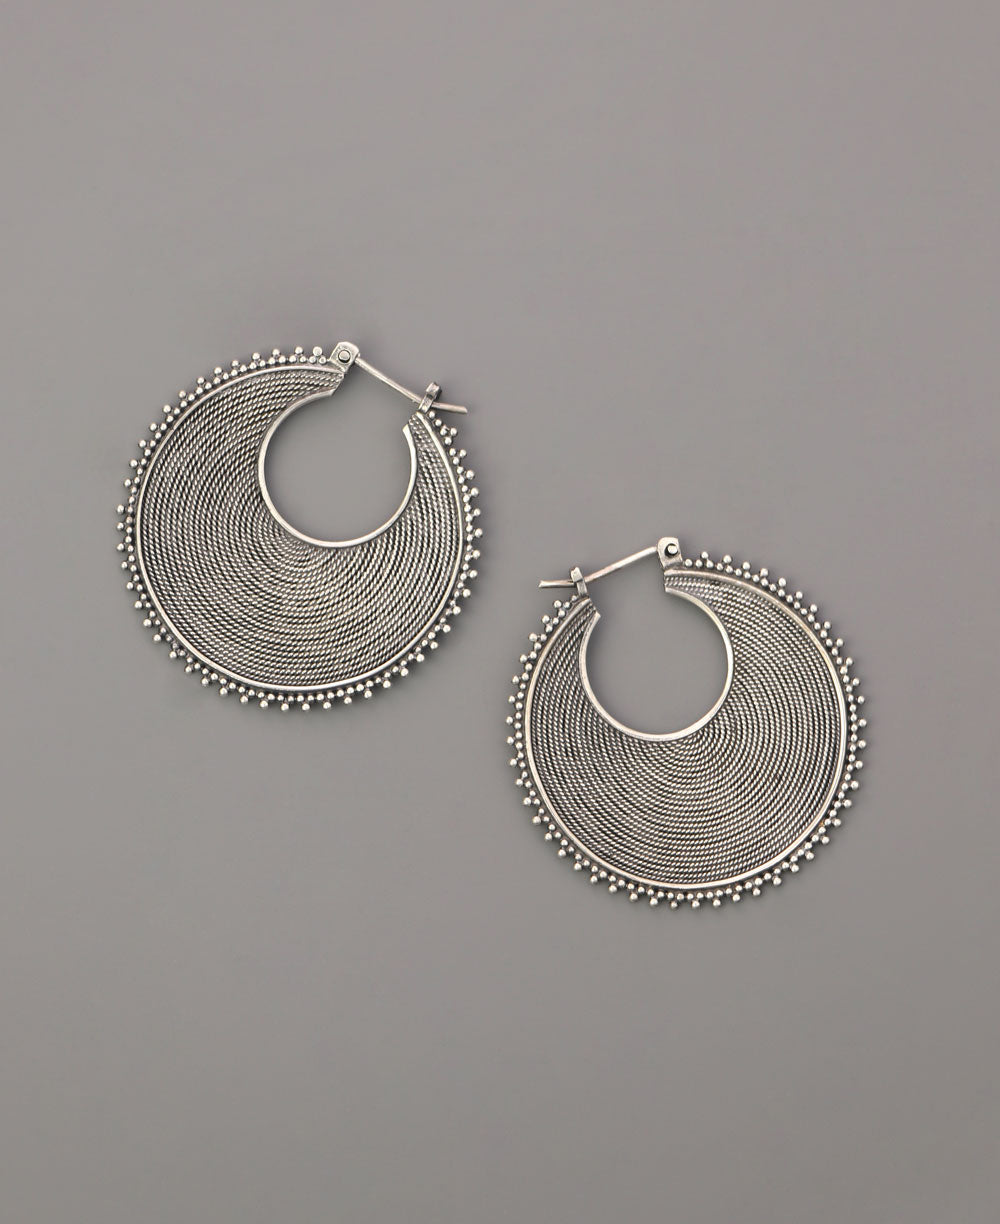 Tribal boho sterling silver hoop earrings